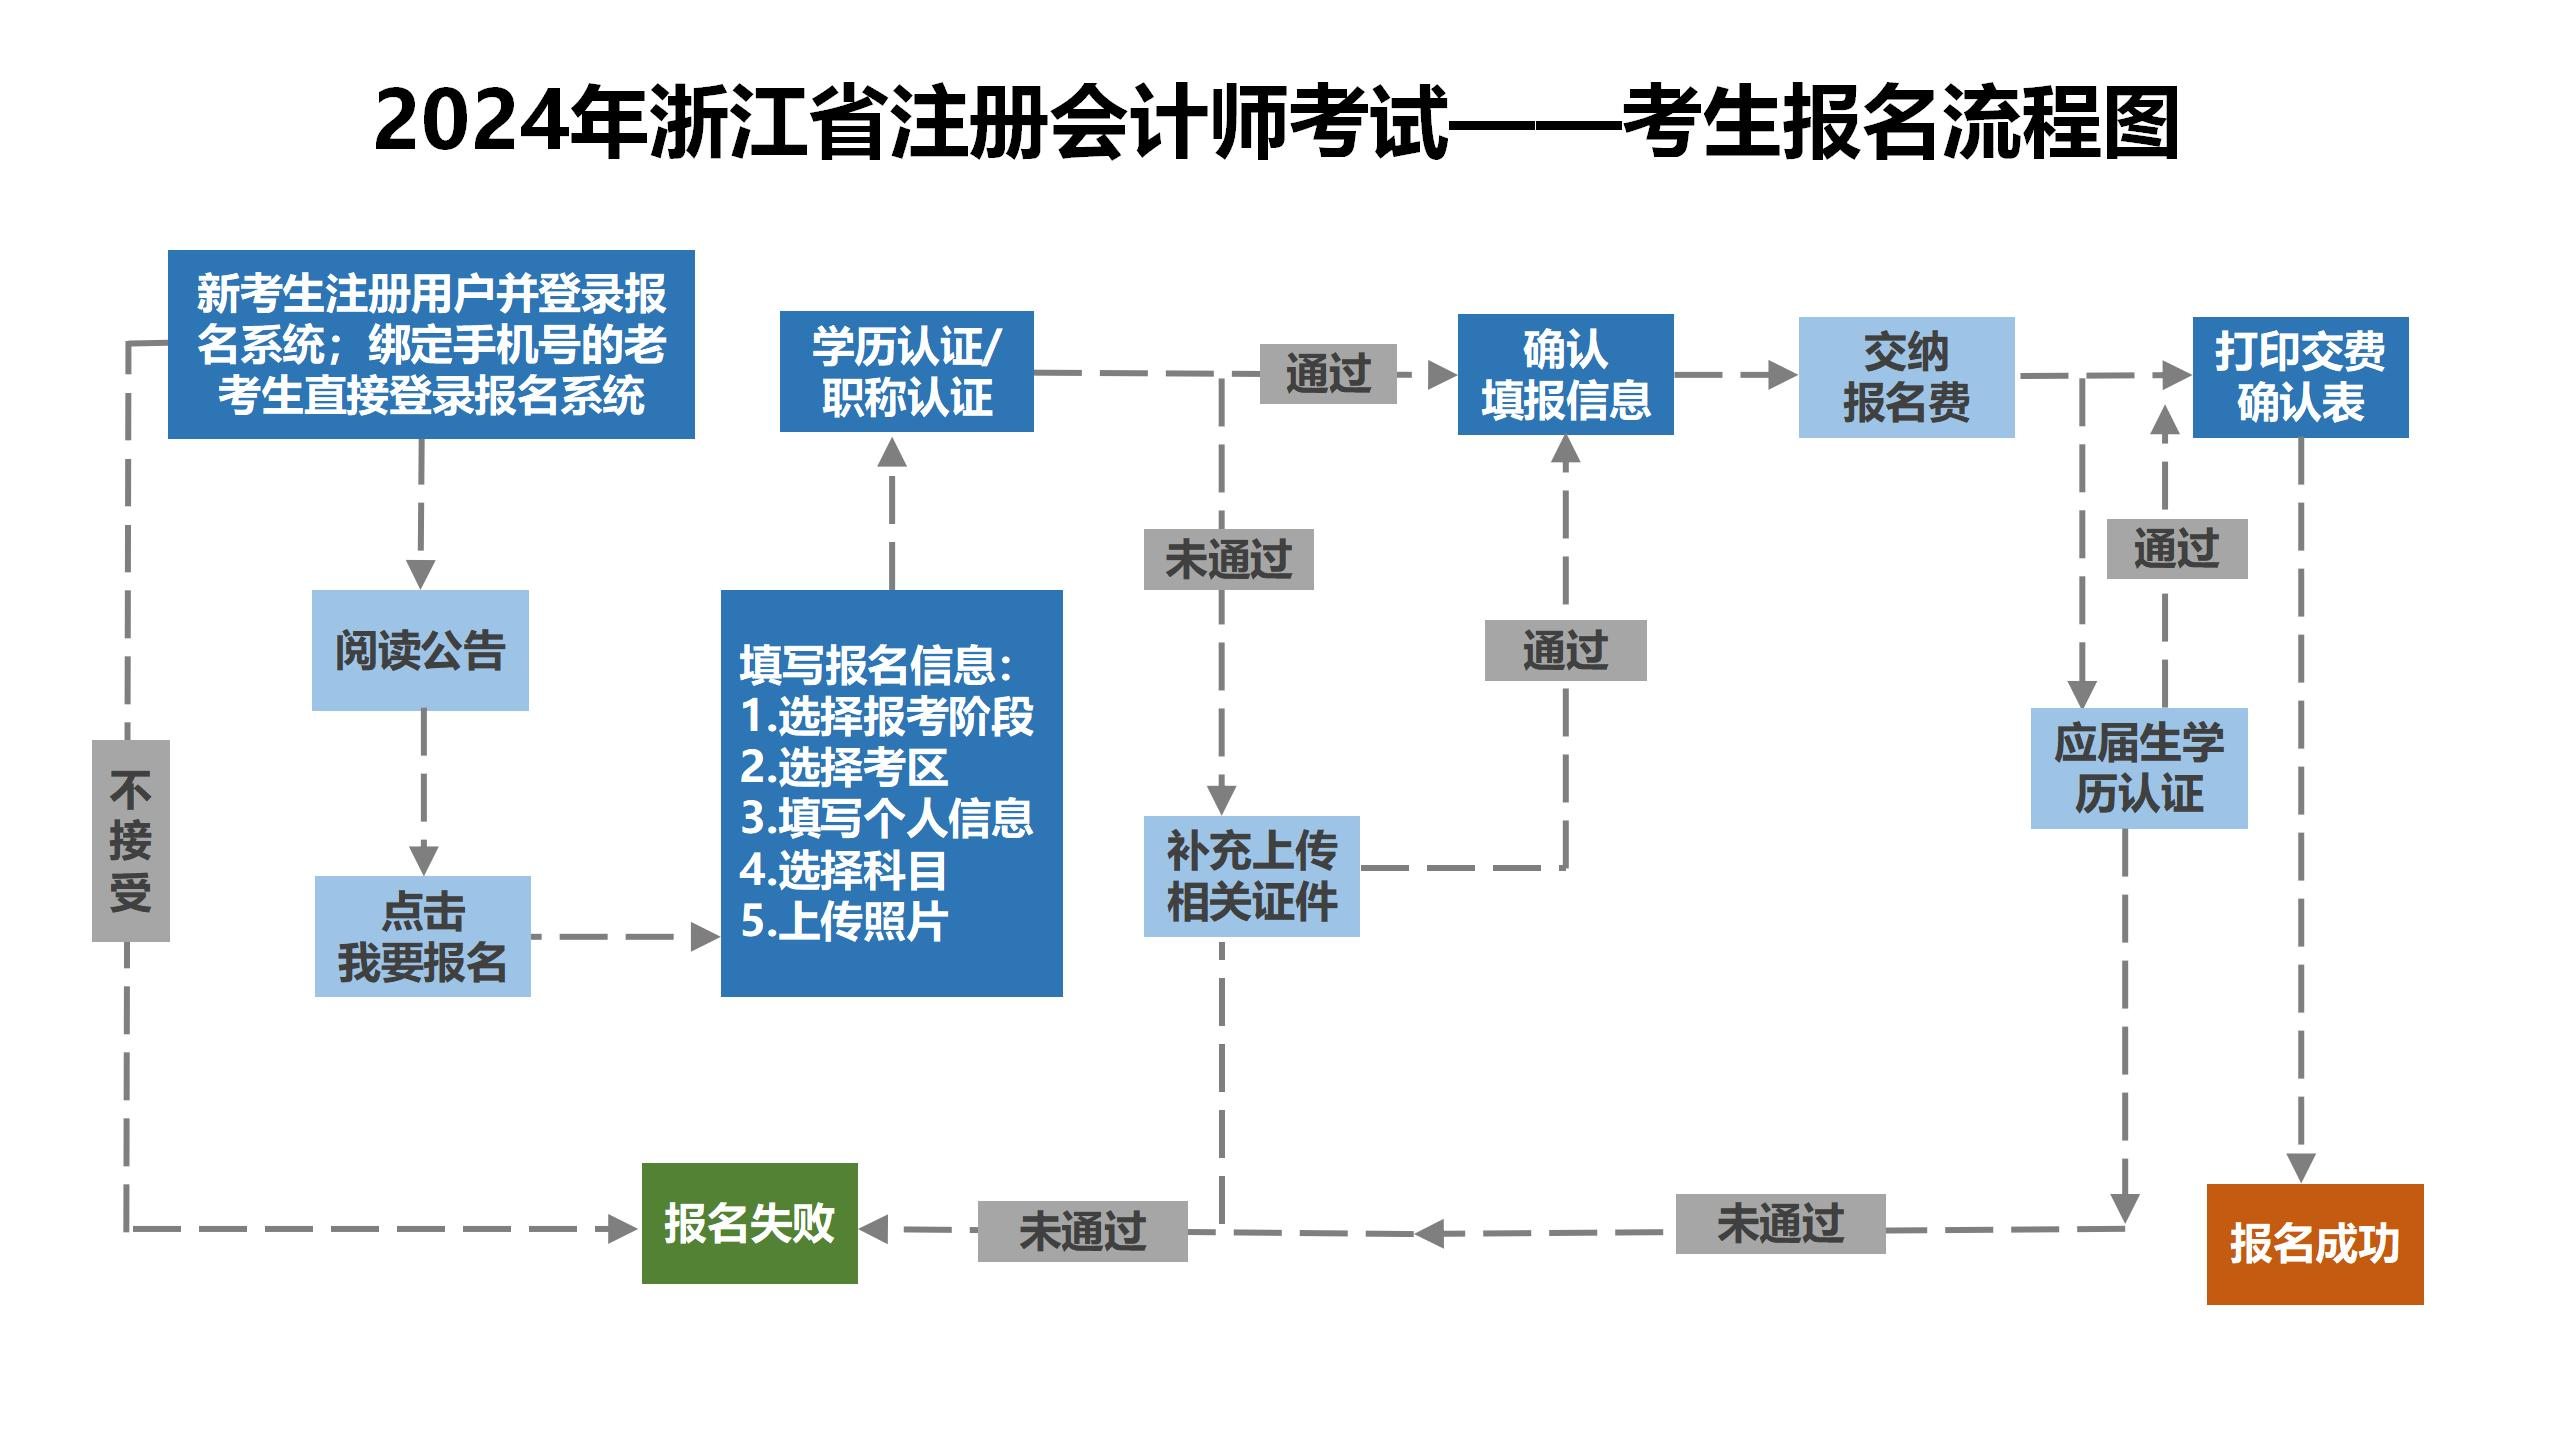 2024年浙江省注册会计师考试——考生报名流程图